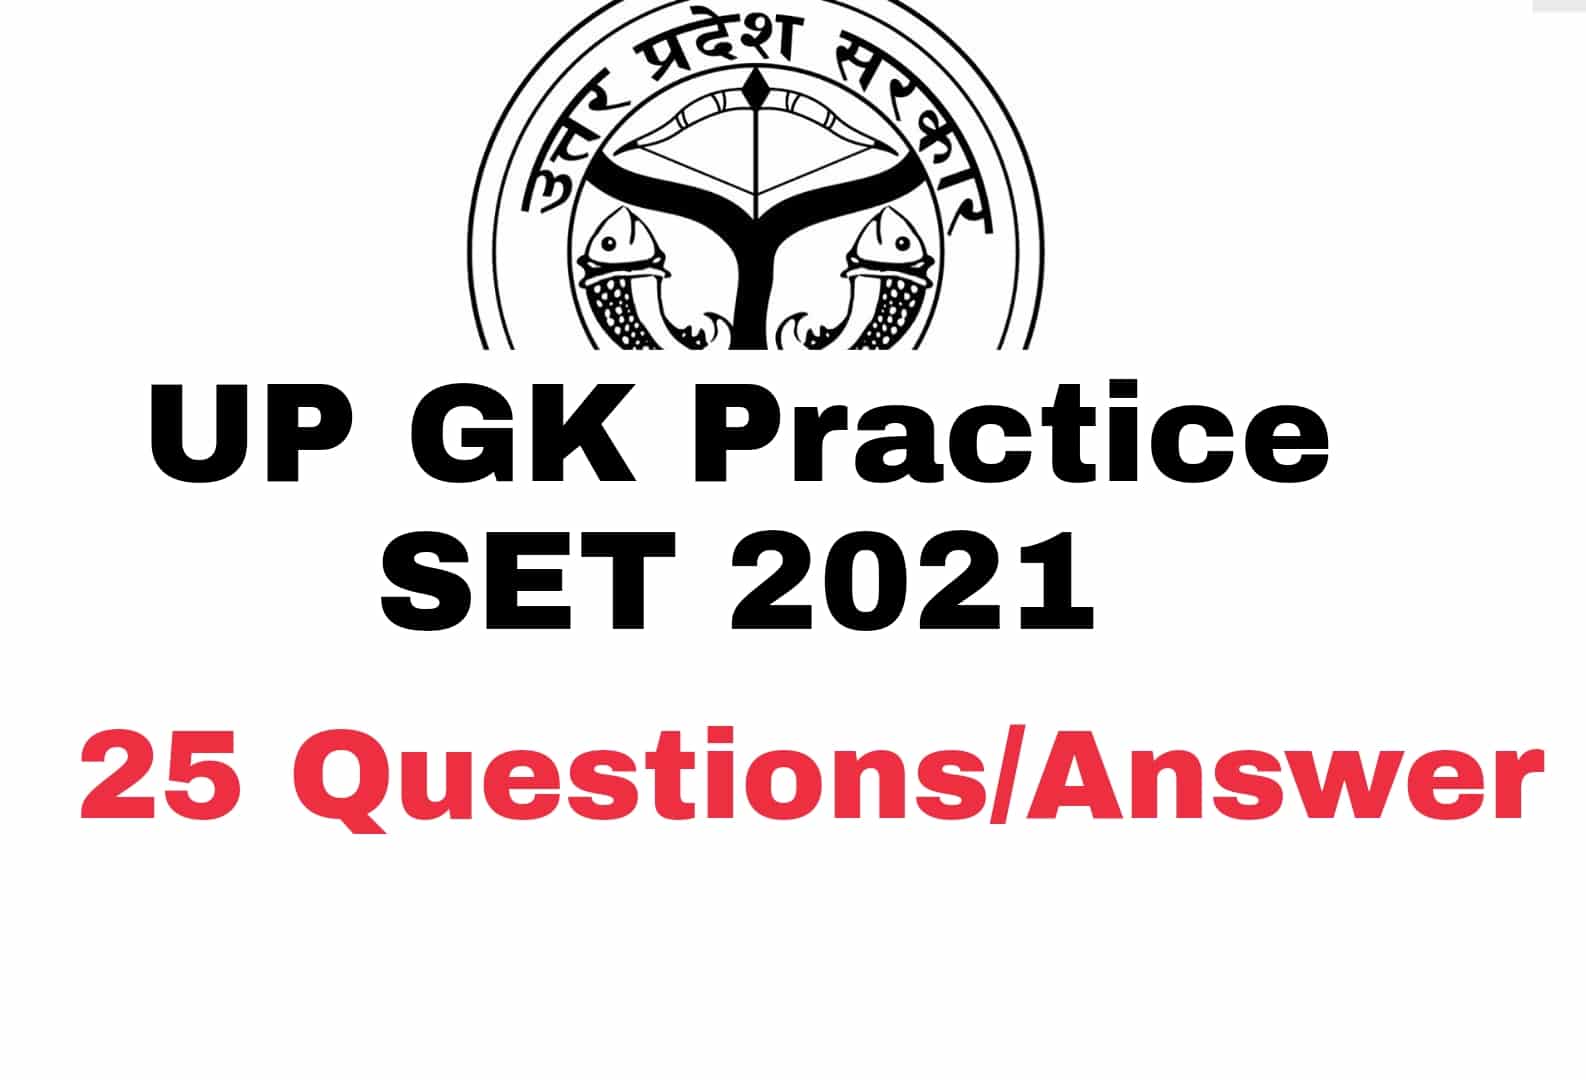 UP GK Practice SET : देखें UP GK से जुड़े 25 महत्वपूर्ण प्रश्न, आ सकते हैं लेखपाल की परीक्षा में